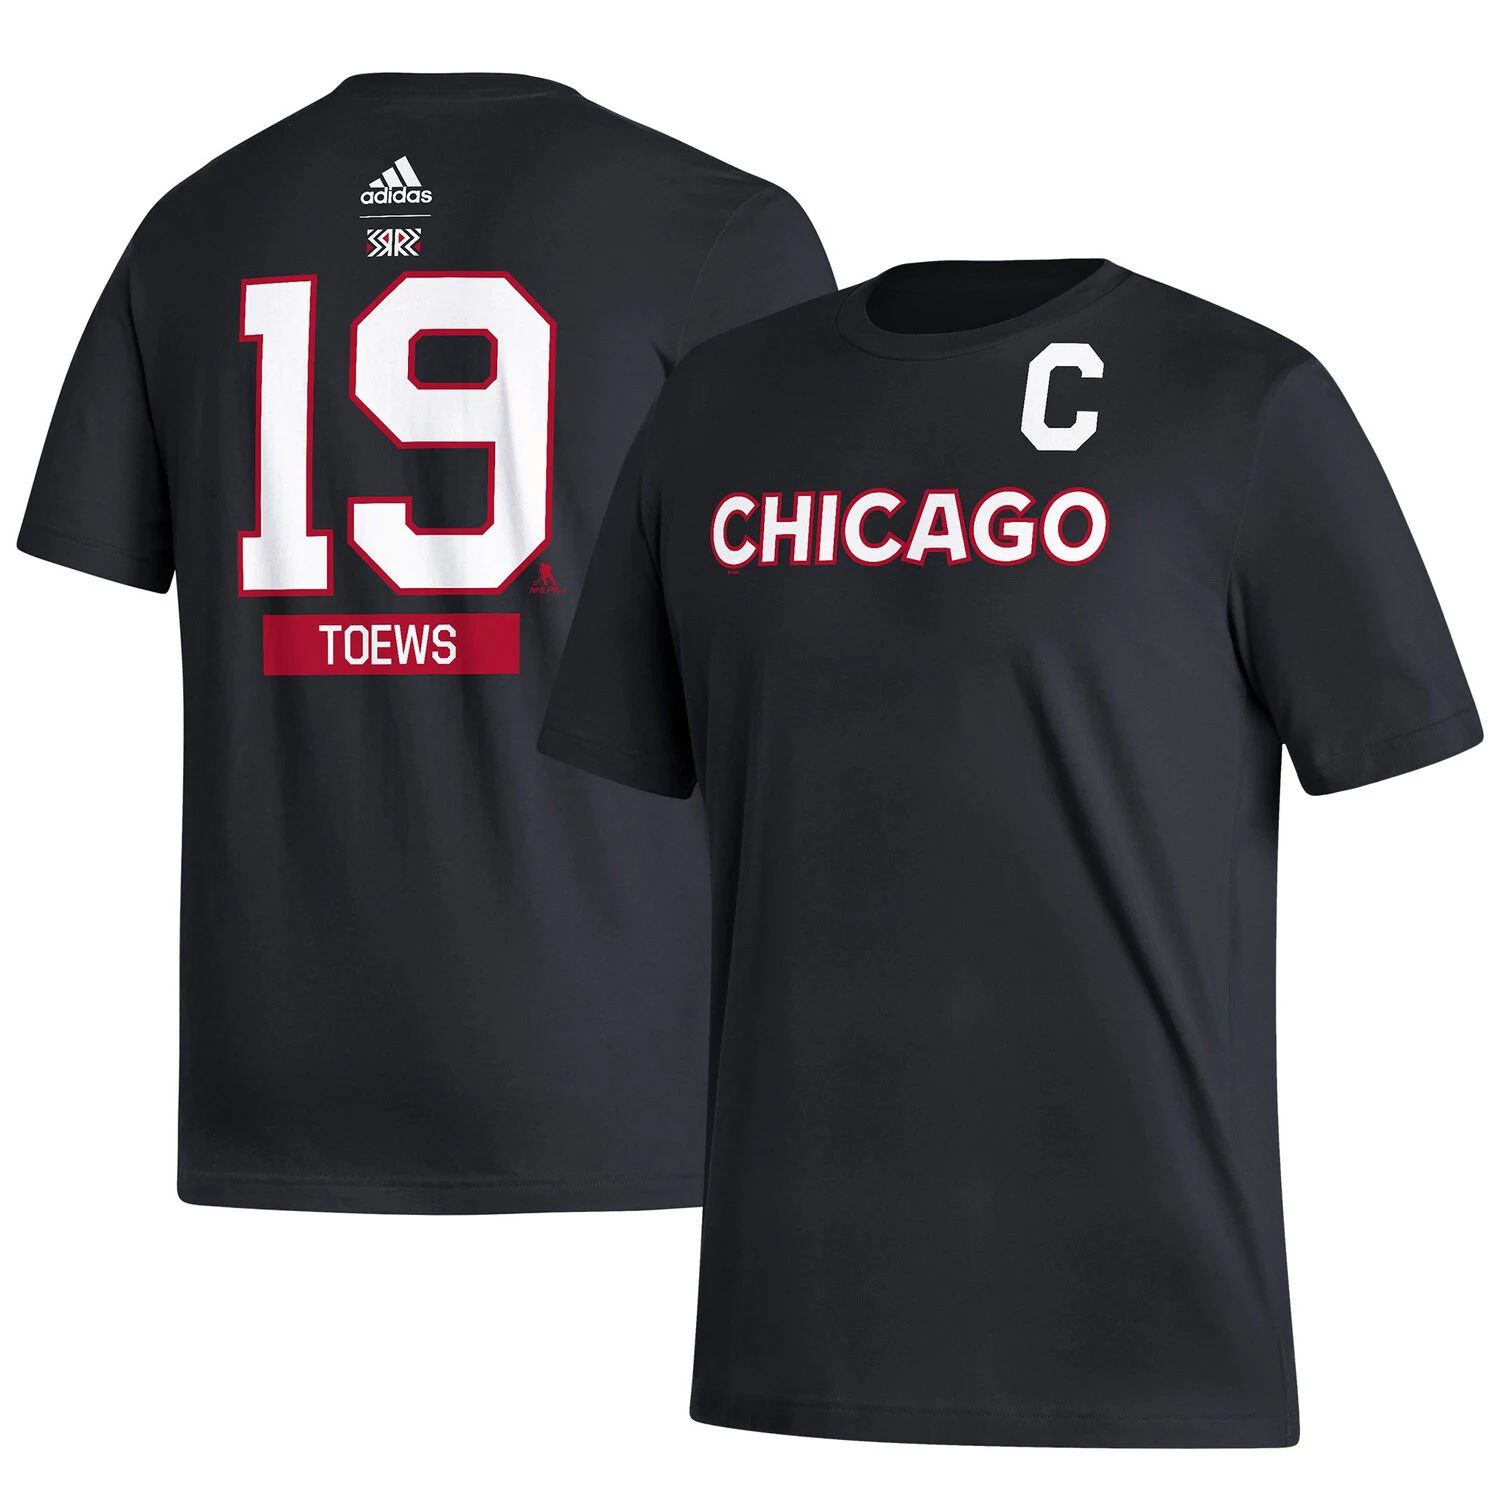 мужская красная мужская футболка с именем и номером команды chicago blackhawks jonathan toews team fanatics Мужская футболка adidas Jonathan Toews Black Chicago Blackhawks Reverse Retro 2.0 с именем и номером